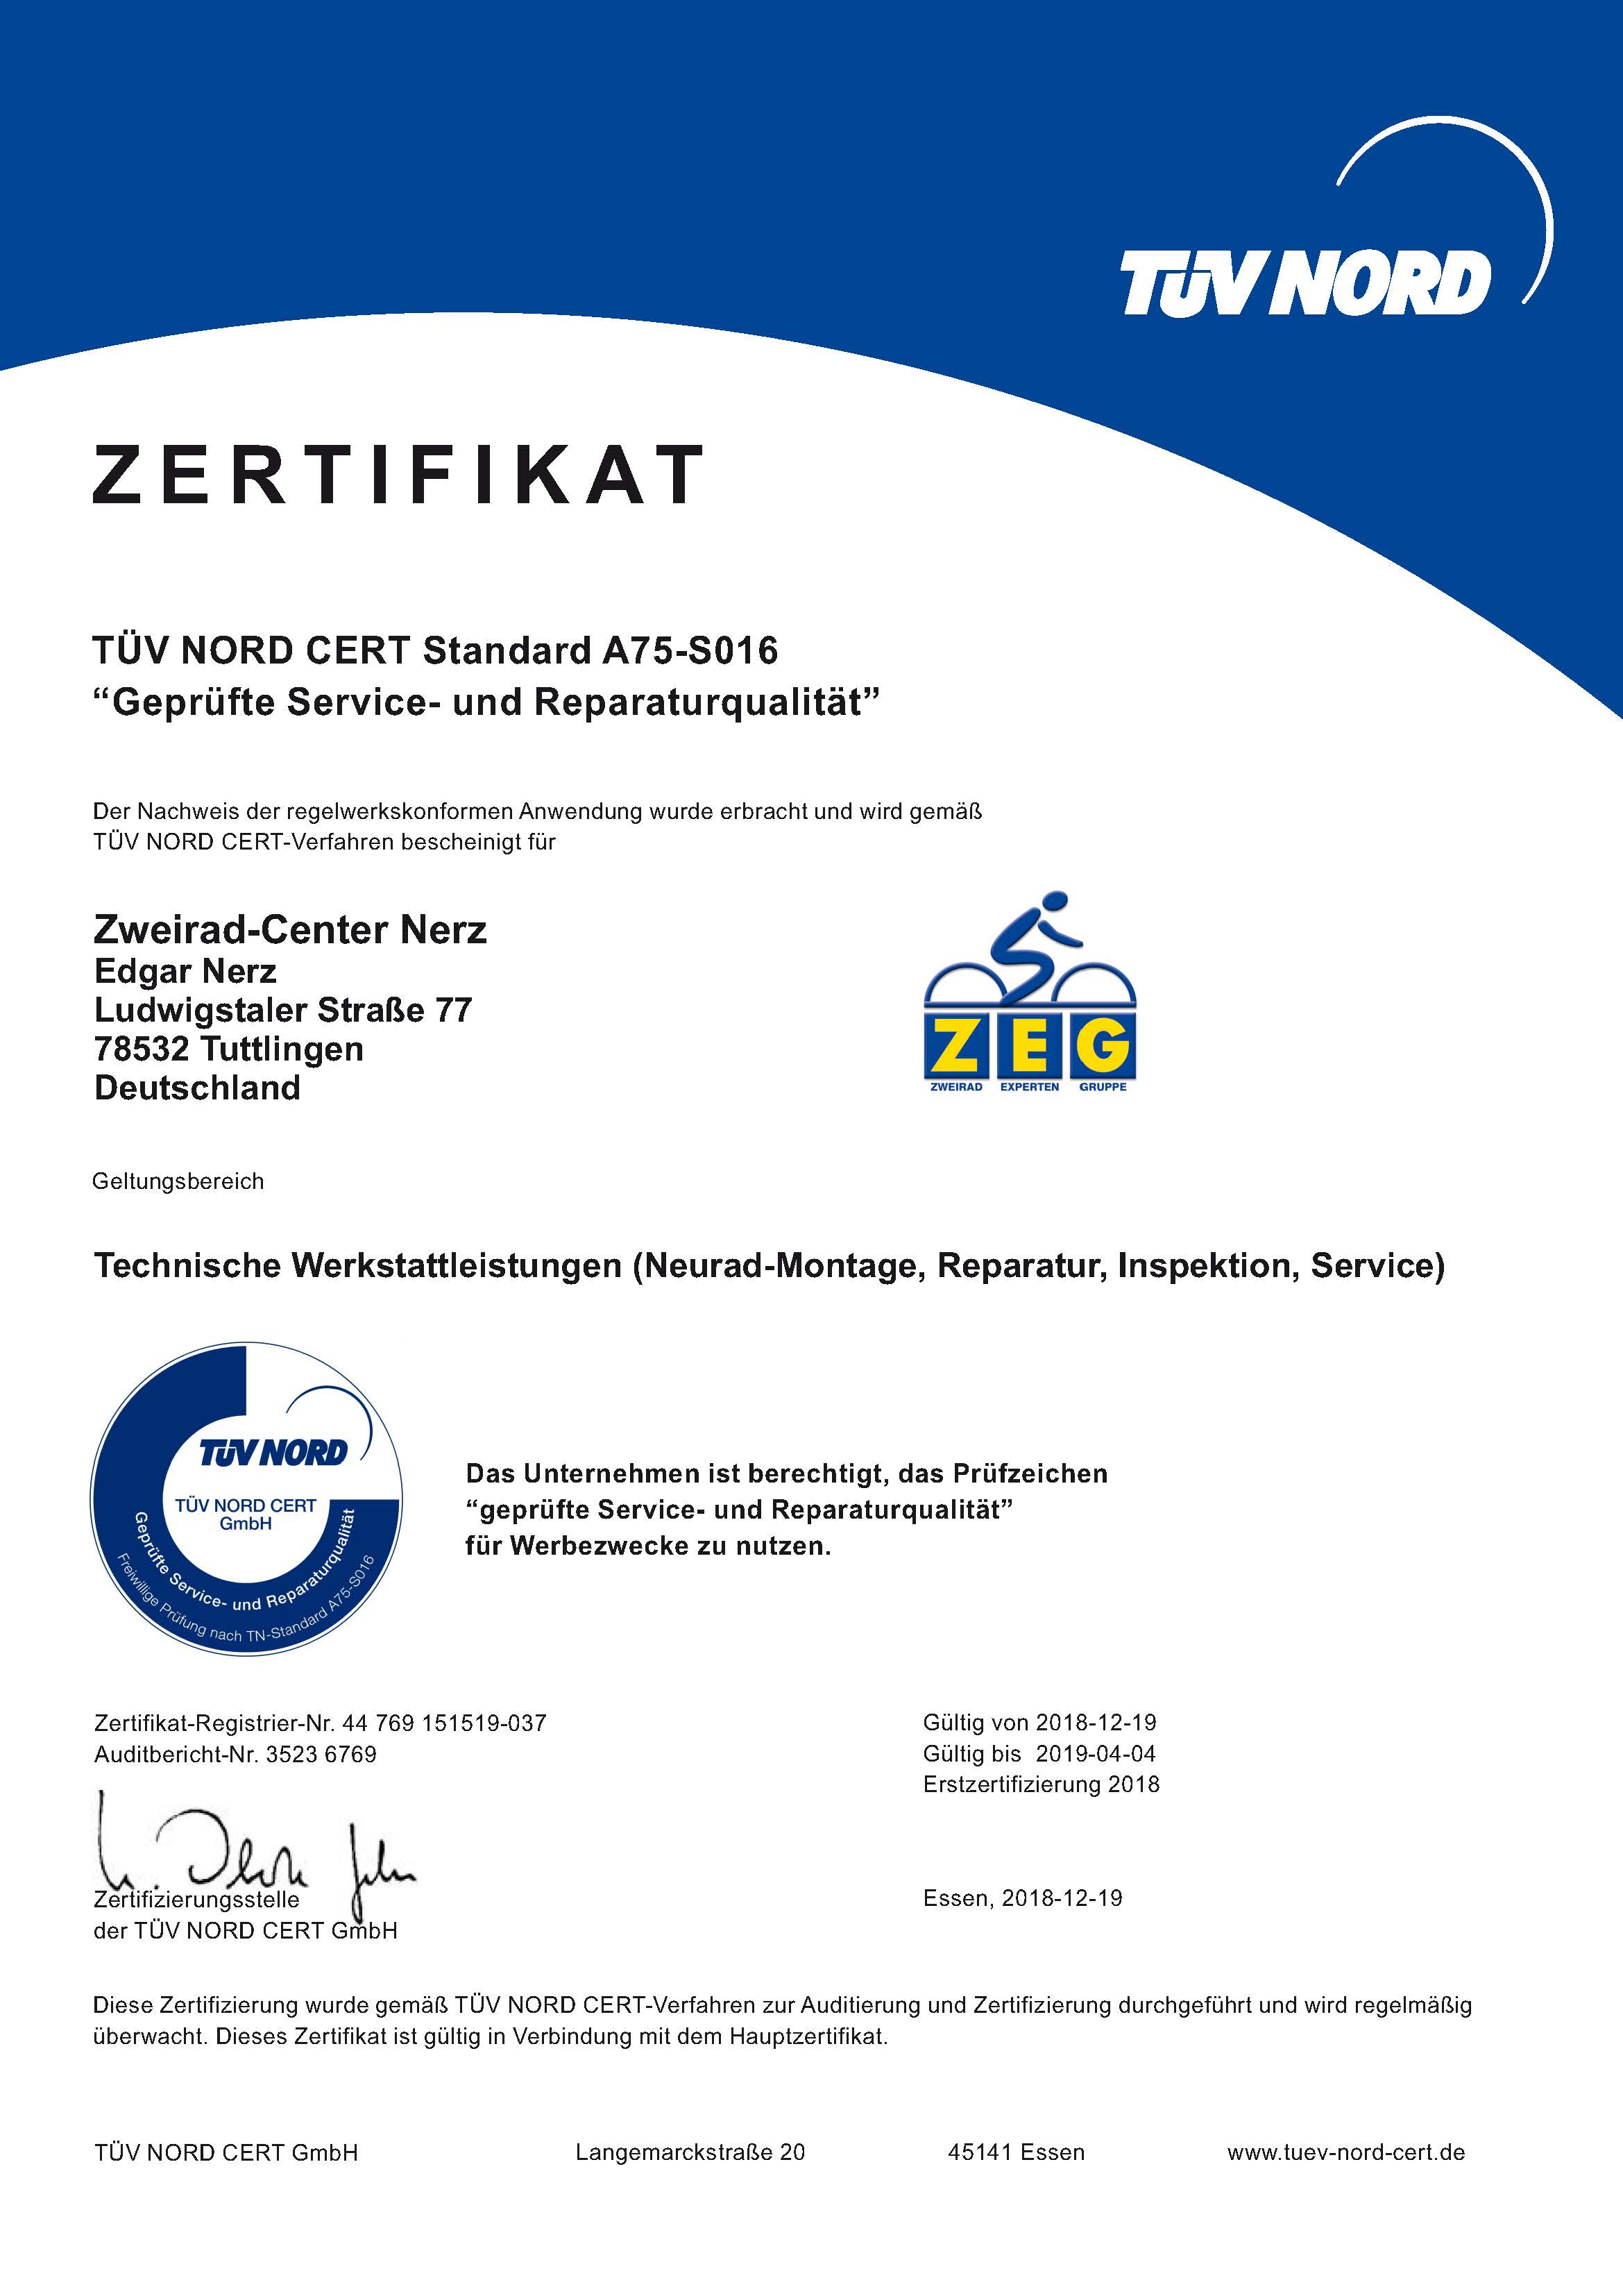 Zertifikat - Zertifizierte Qualitätswerkstatt - TÜV NORD und ZEG